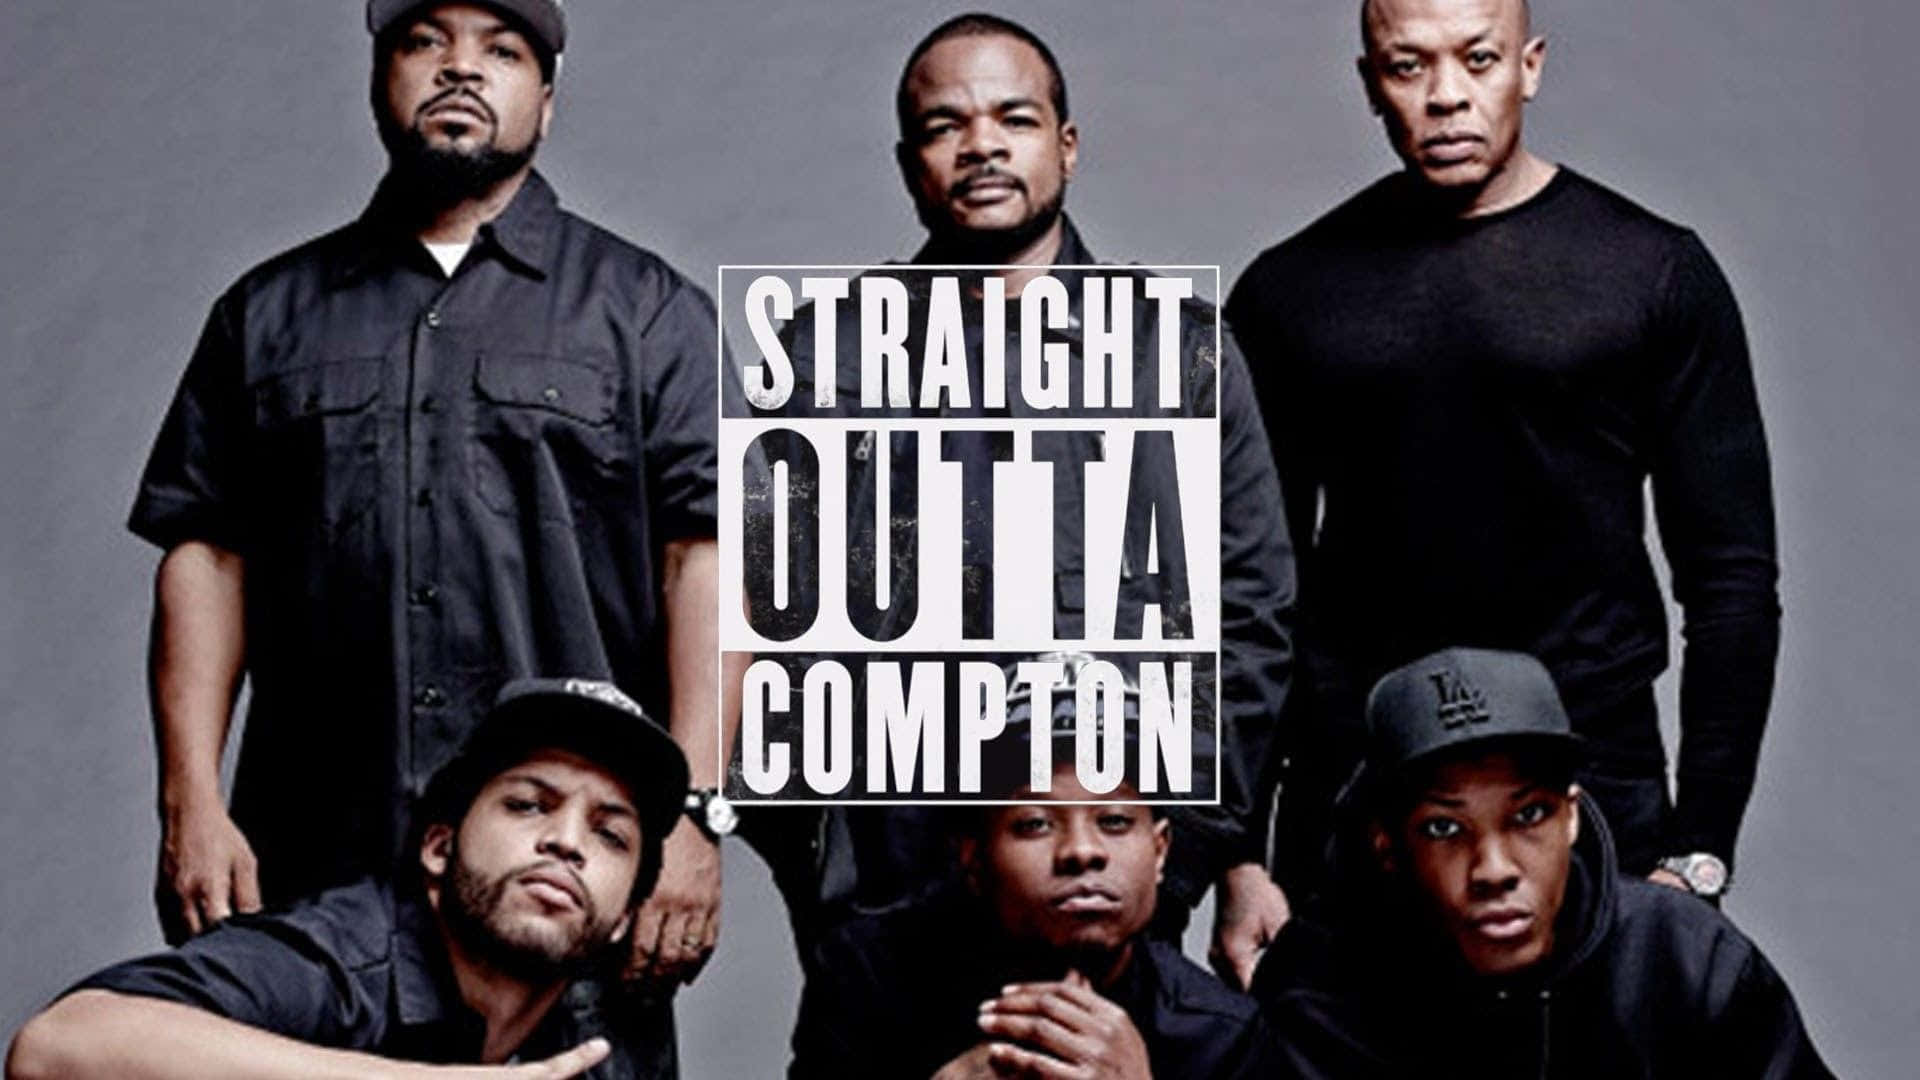 Straightoutta Compton Rapper Profilbild Wallpaper